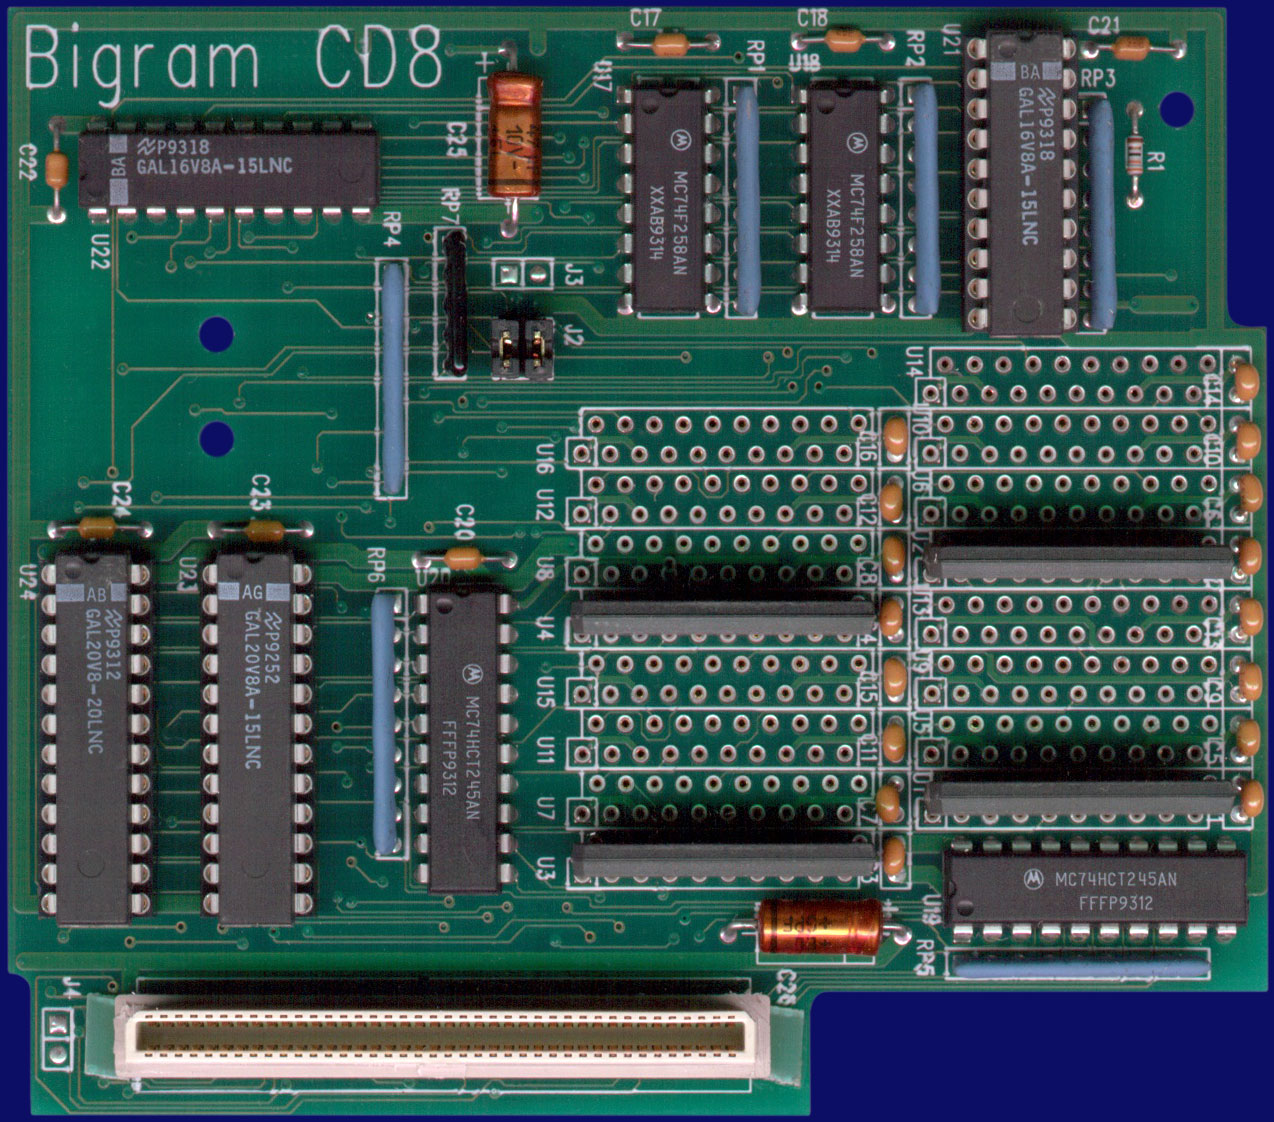 W.A.W. Elektronik BigRAM CD8 - front side